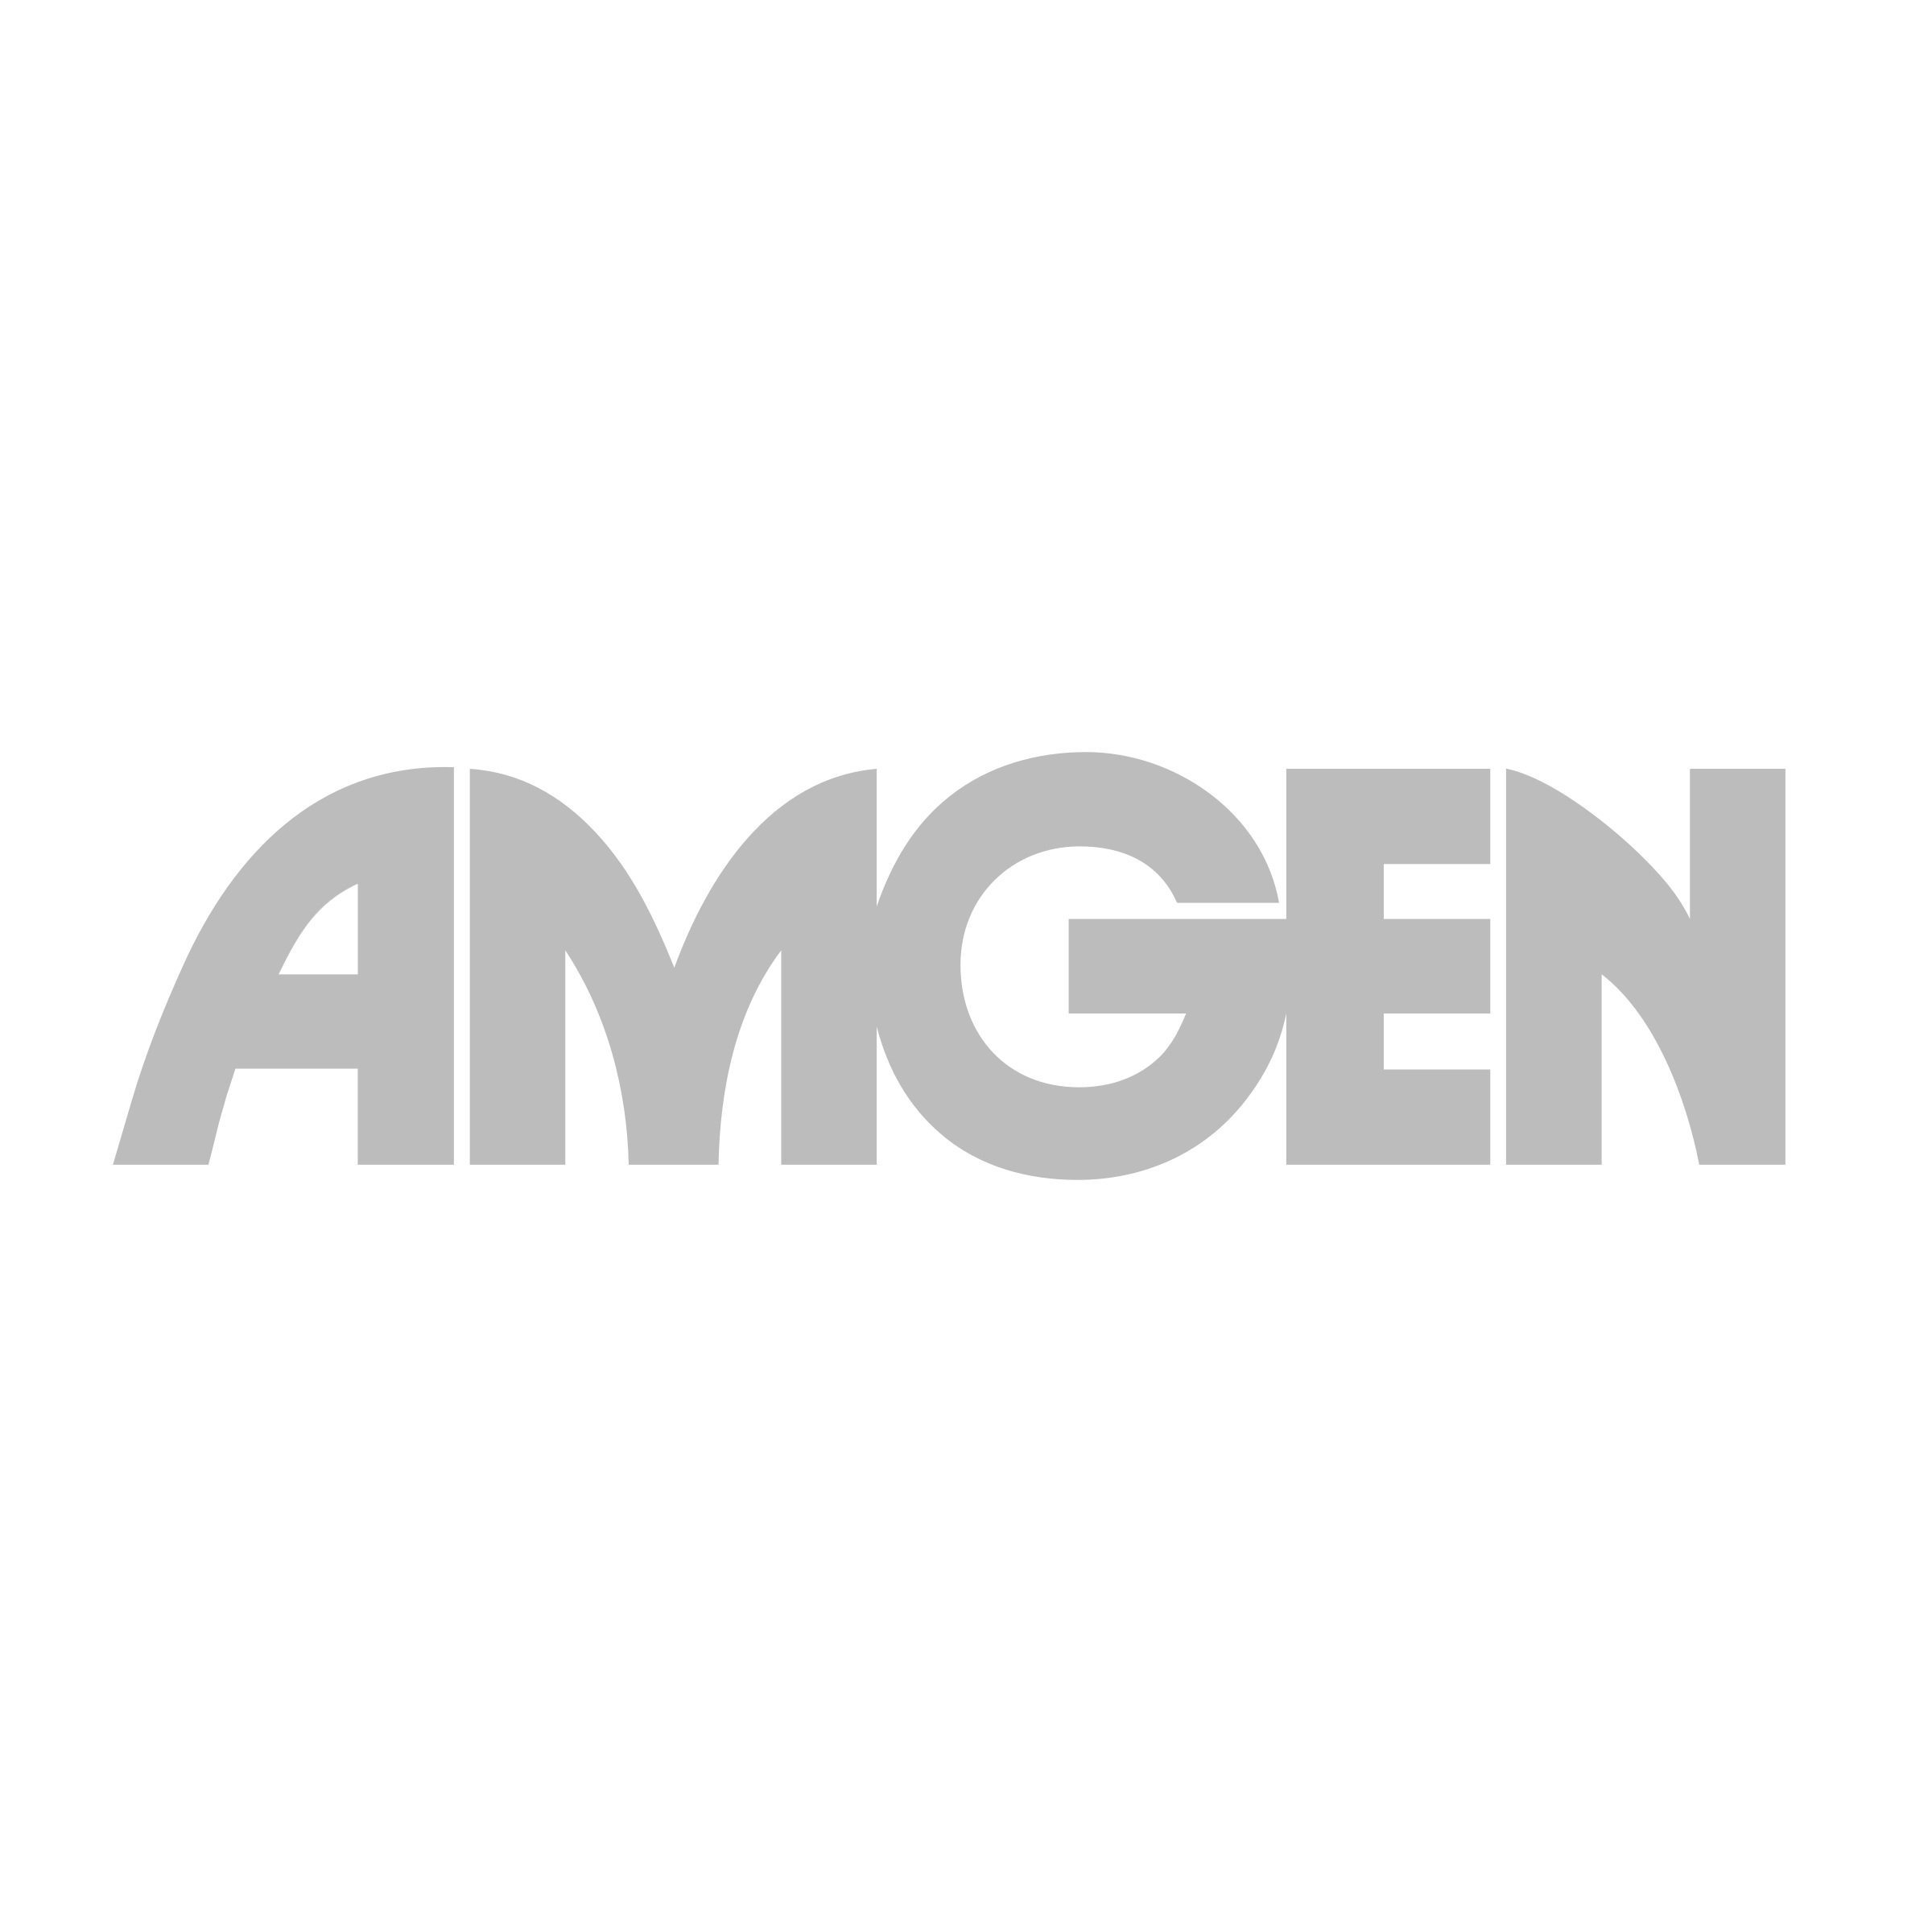 amgen-gray-logo.jpg